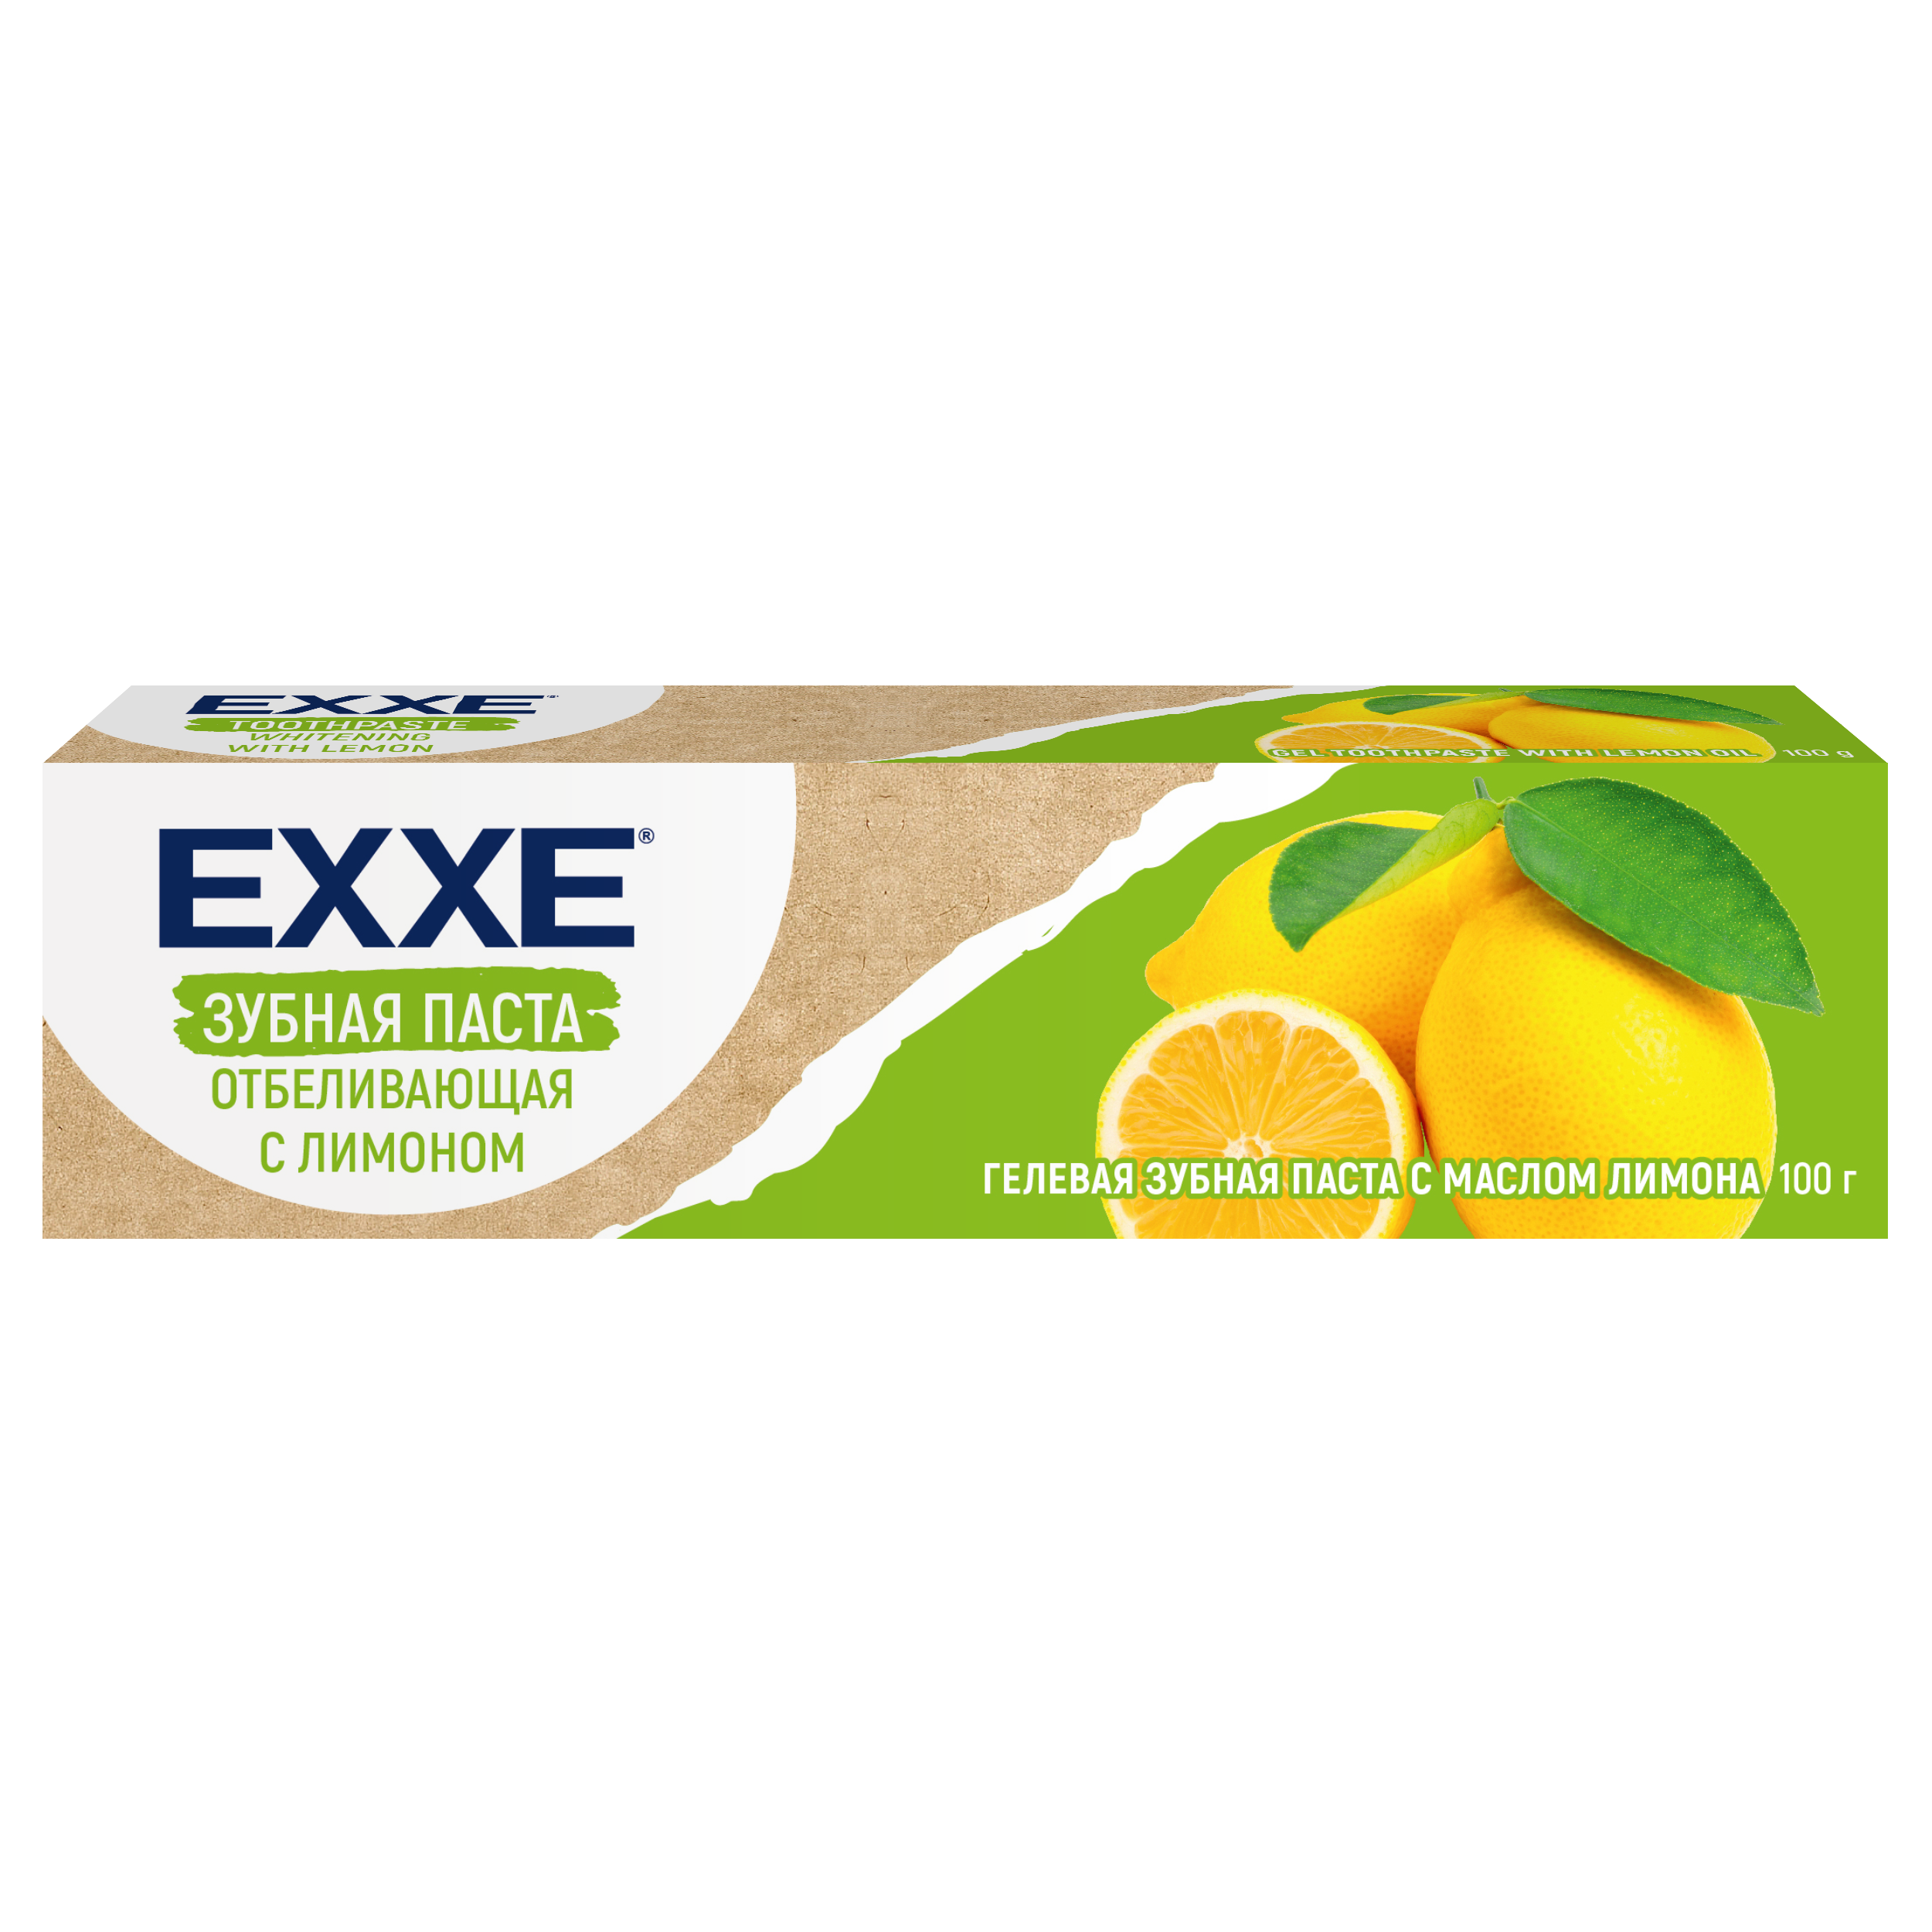 Зубная паста Exxe Отбеливающая с лимоном, 100 г